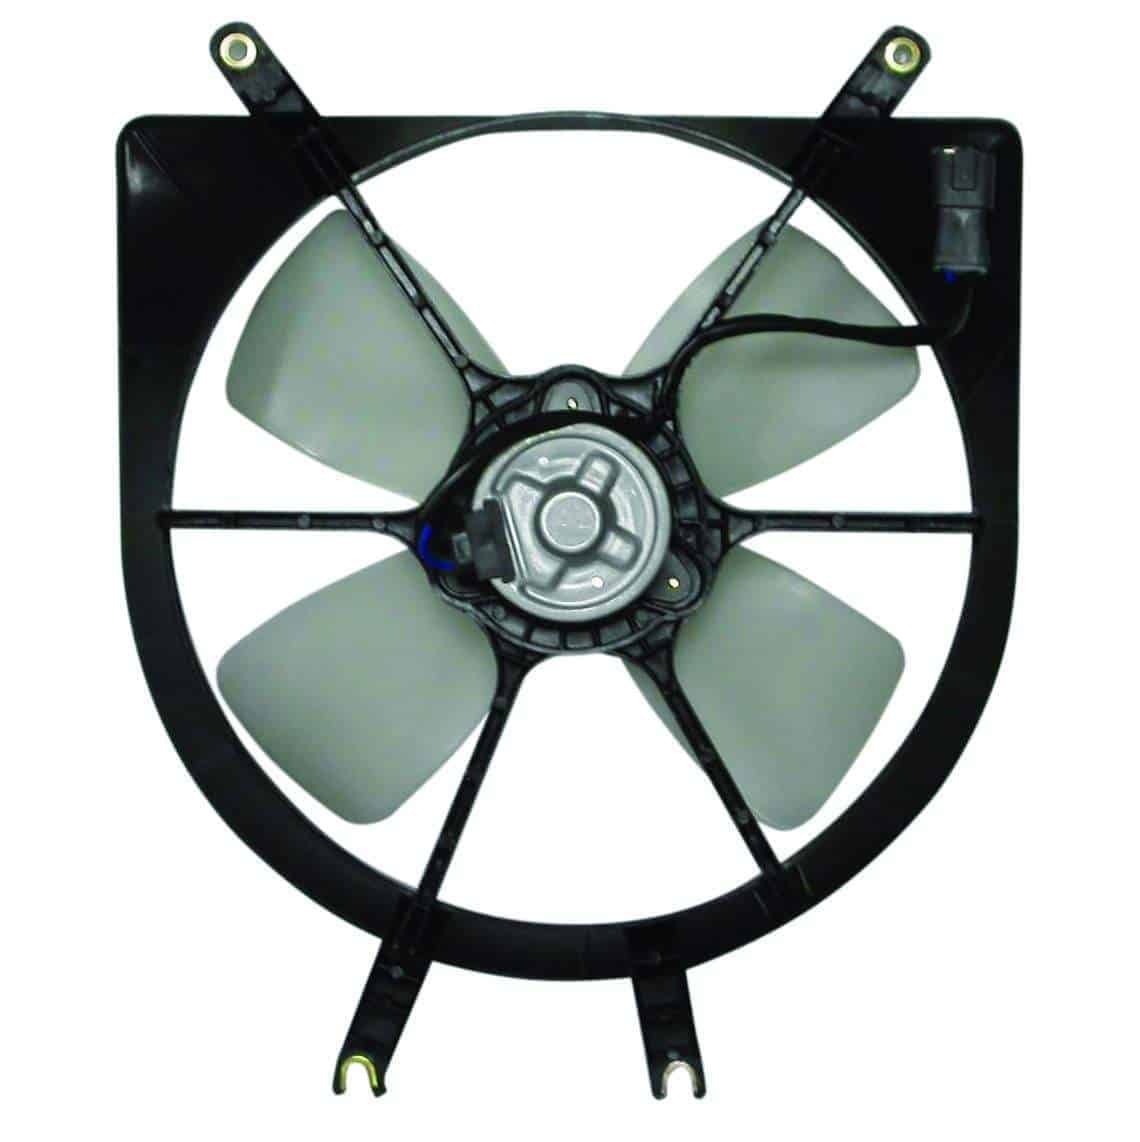 HO3115101 Cooling System Fan Radiator Assembly